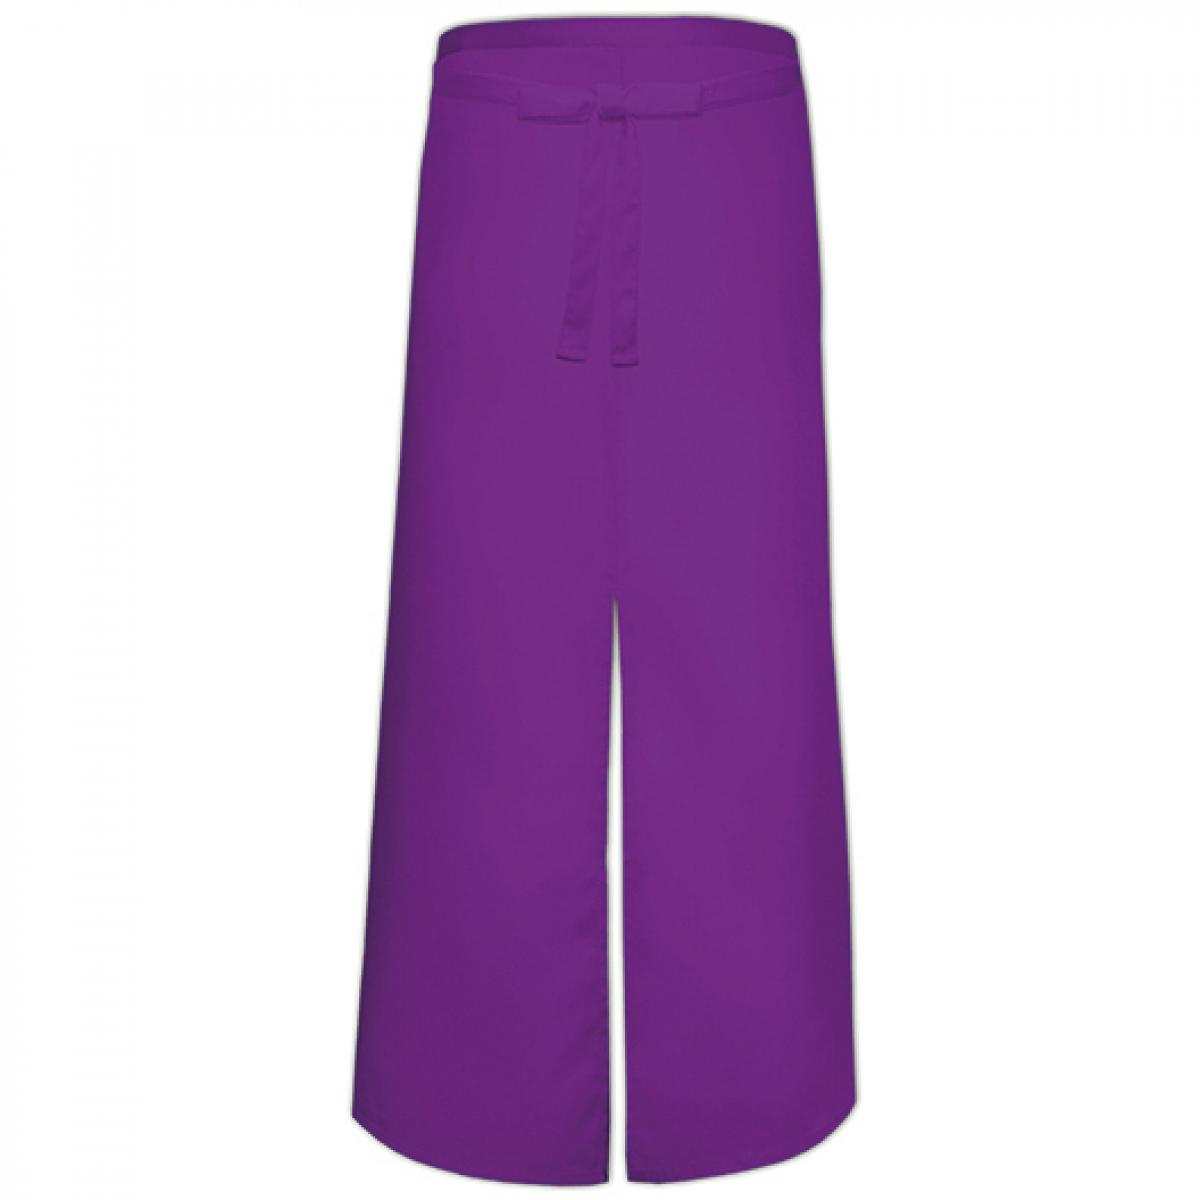 Hersteller: Link Kitchen Wear Herstellernummer: FS100100SP Artikelbezeichnung: Bistro Apron with Split - 100 x 100 cm - Waschbar bis 60 °C Farbe: Purple